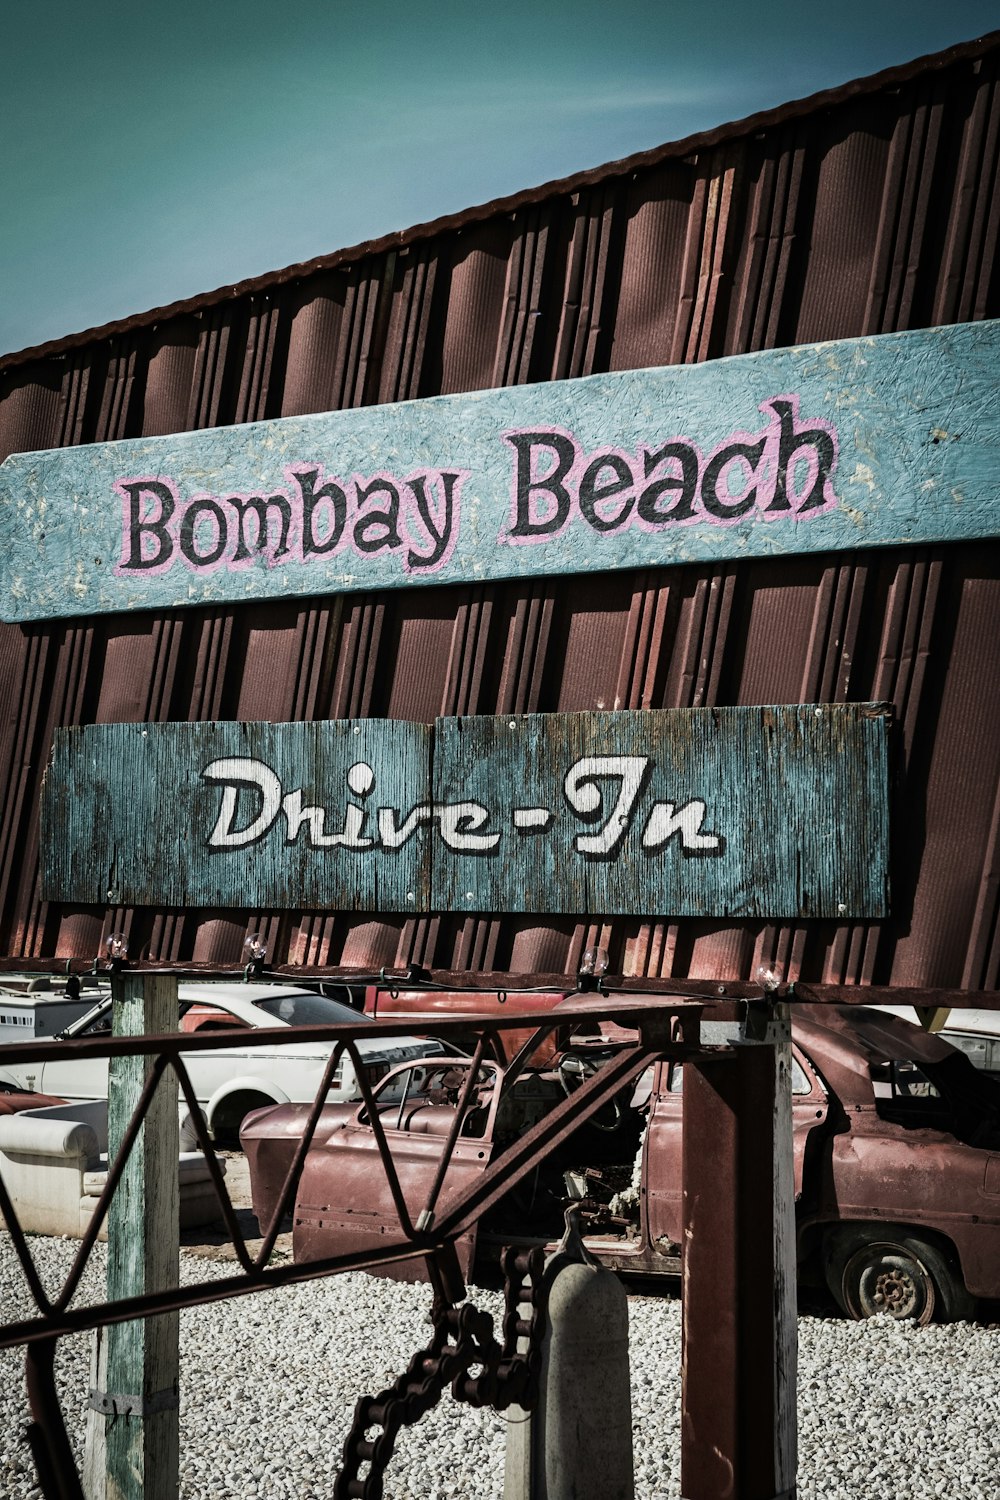 Bombay beach signage